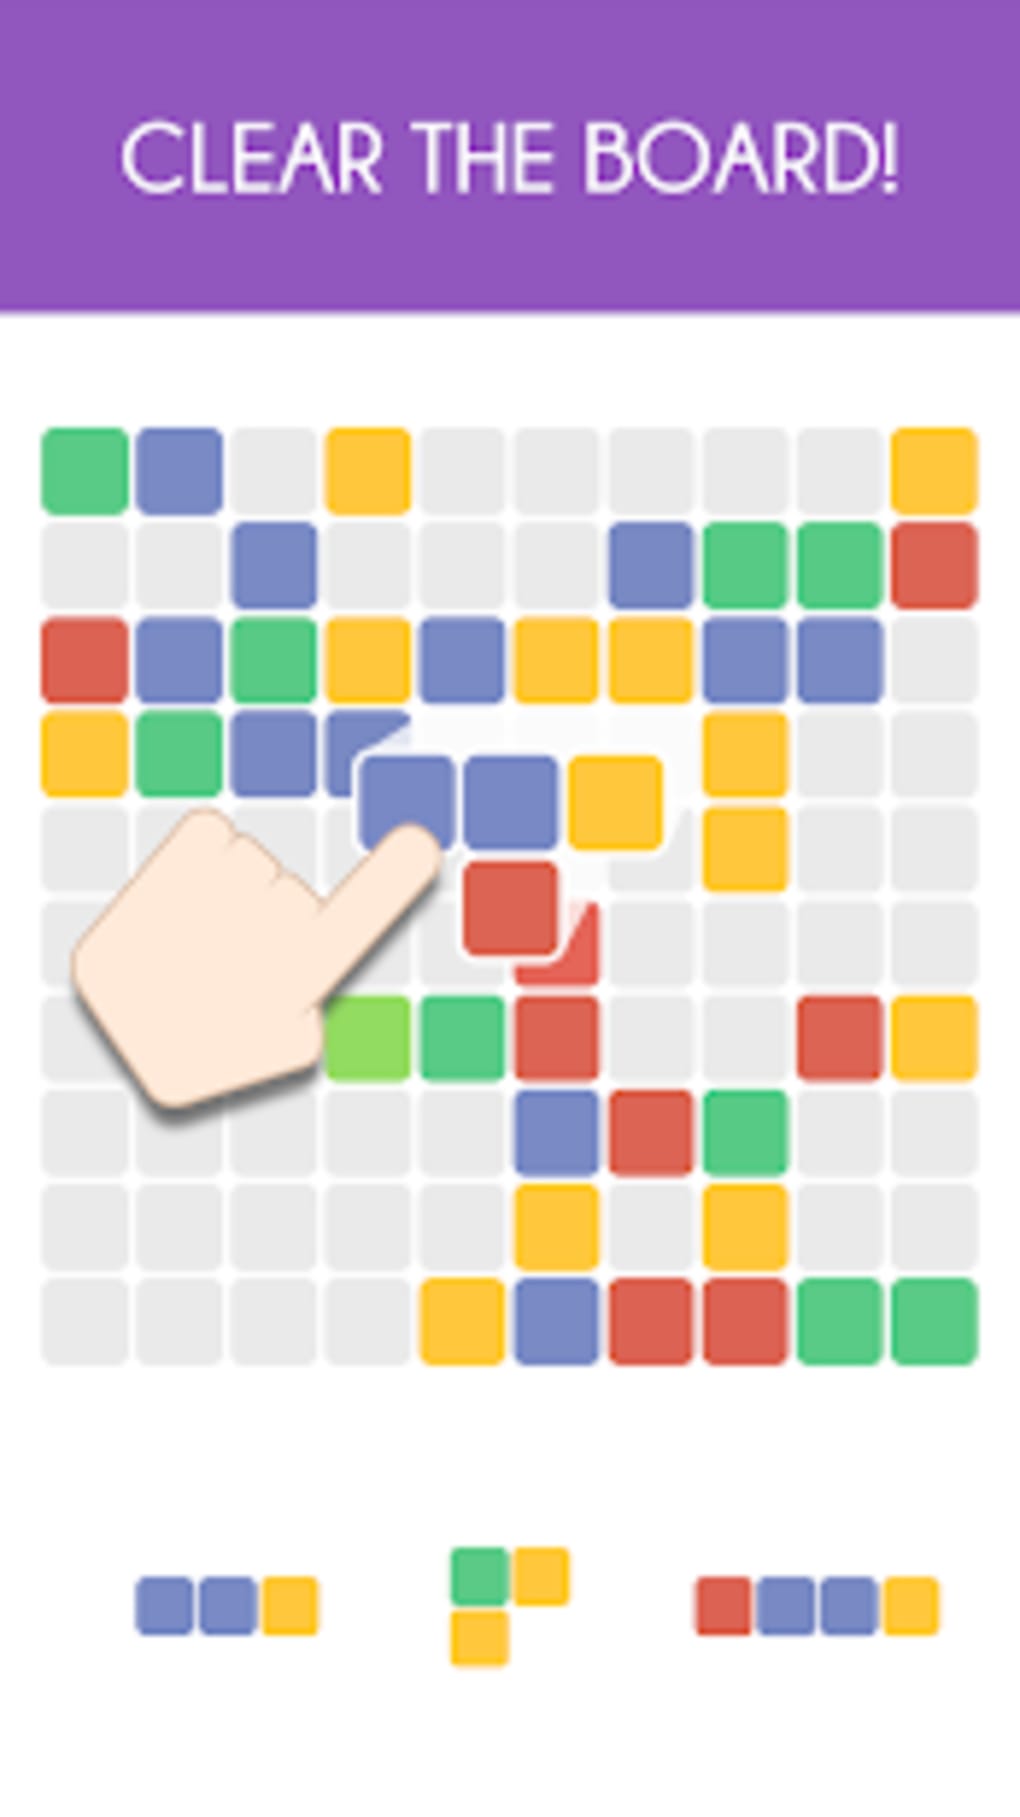 Download do APK de Jogos de Lógica Infantil para Android